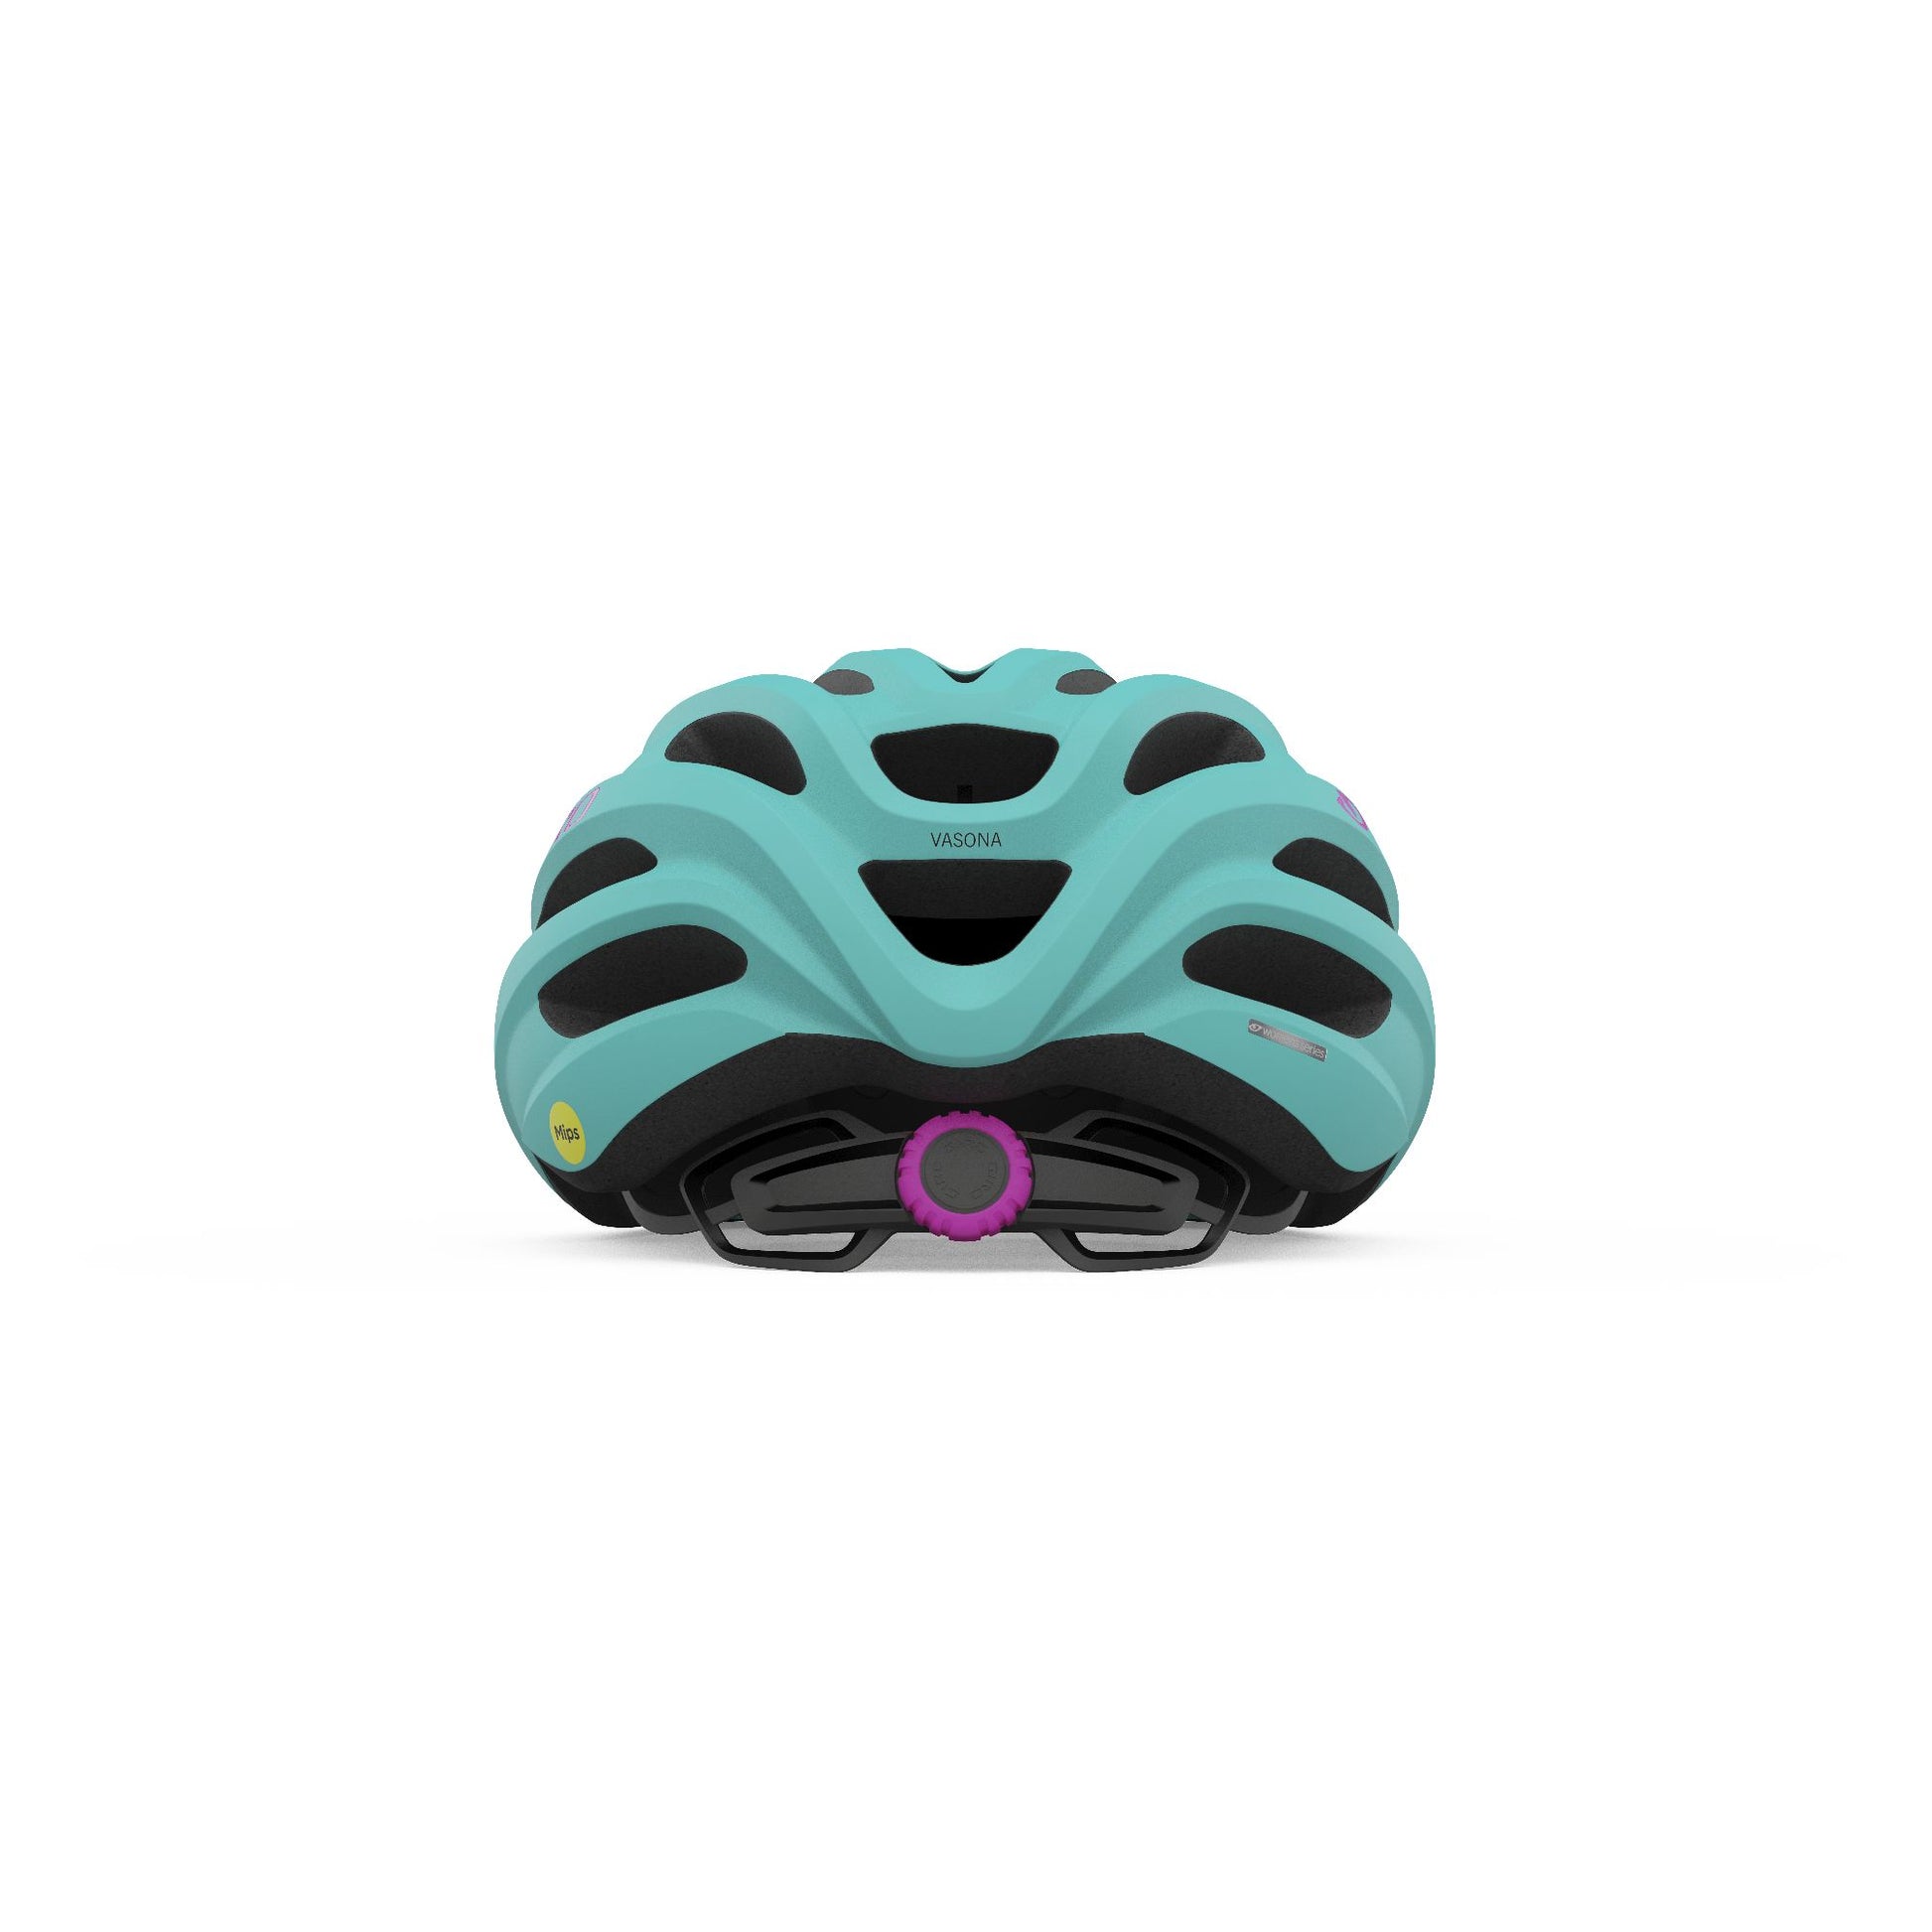 Giro Women's Vasona MIPS Helmet Matte Screaming Teal UW Bike Helmets